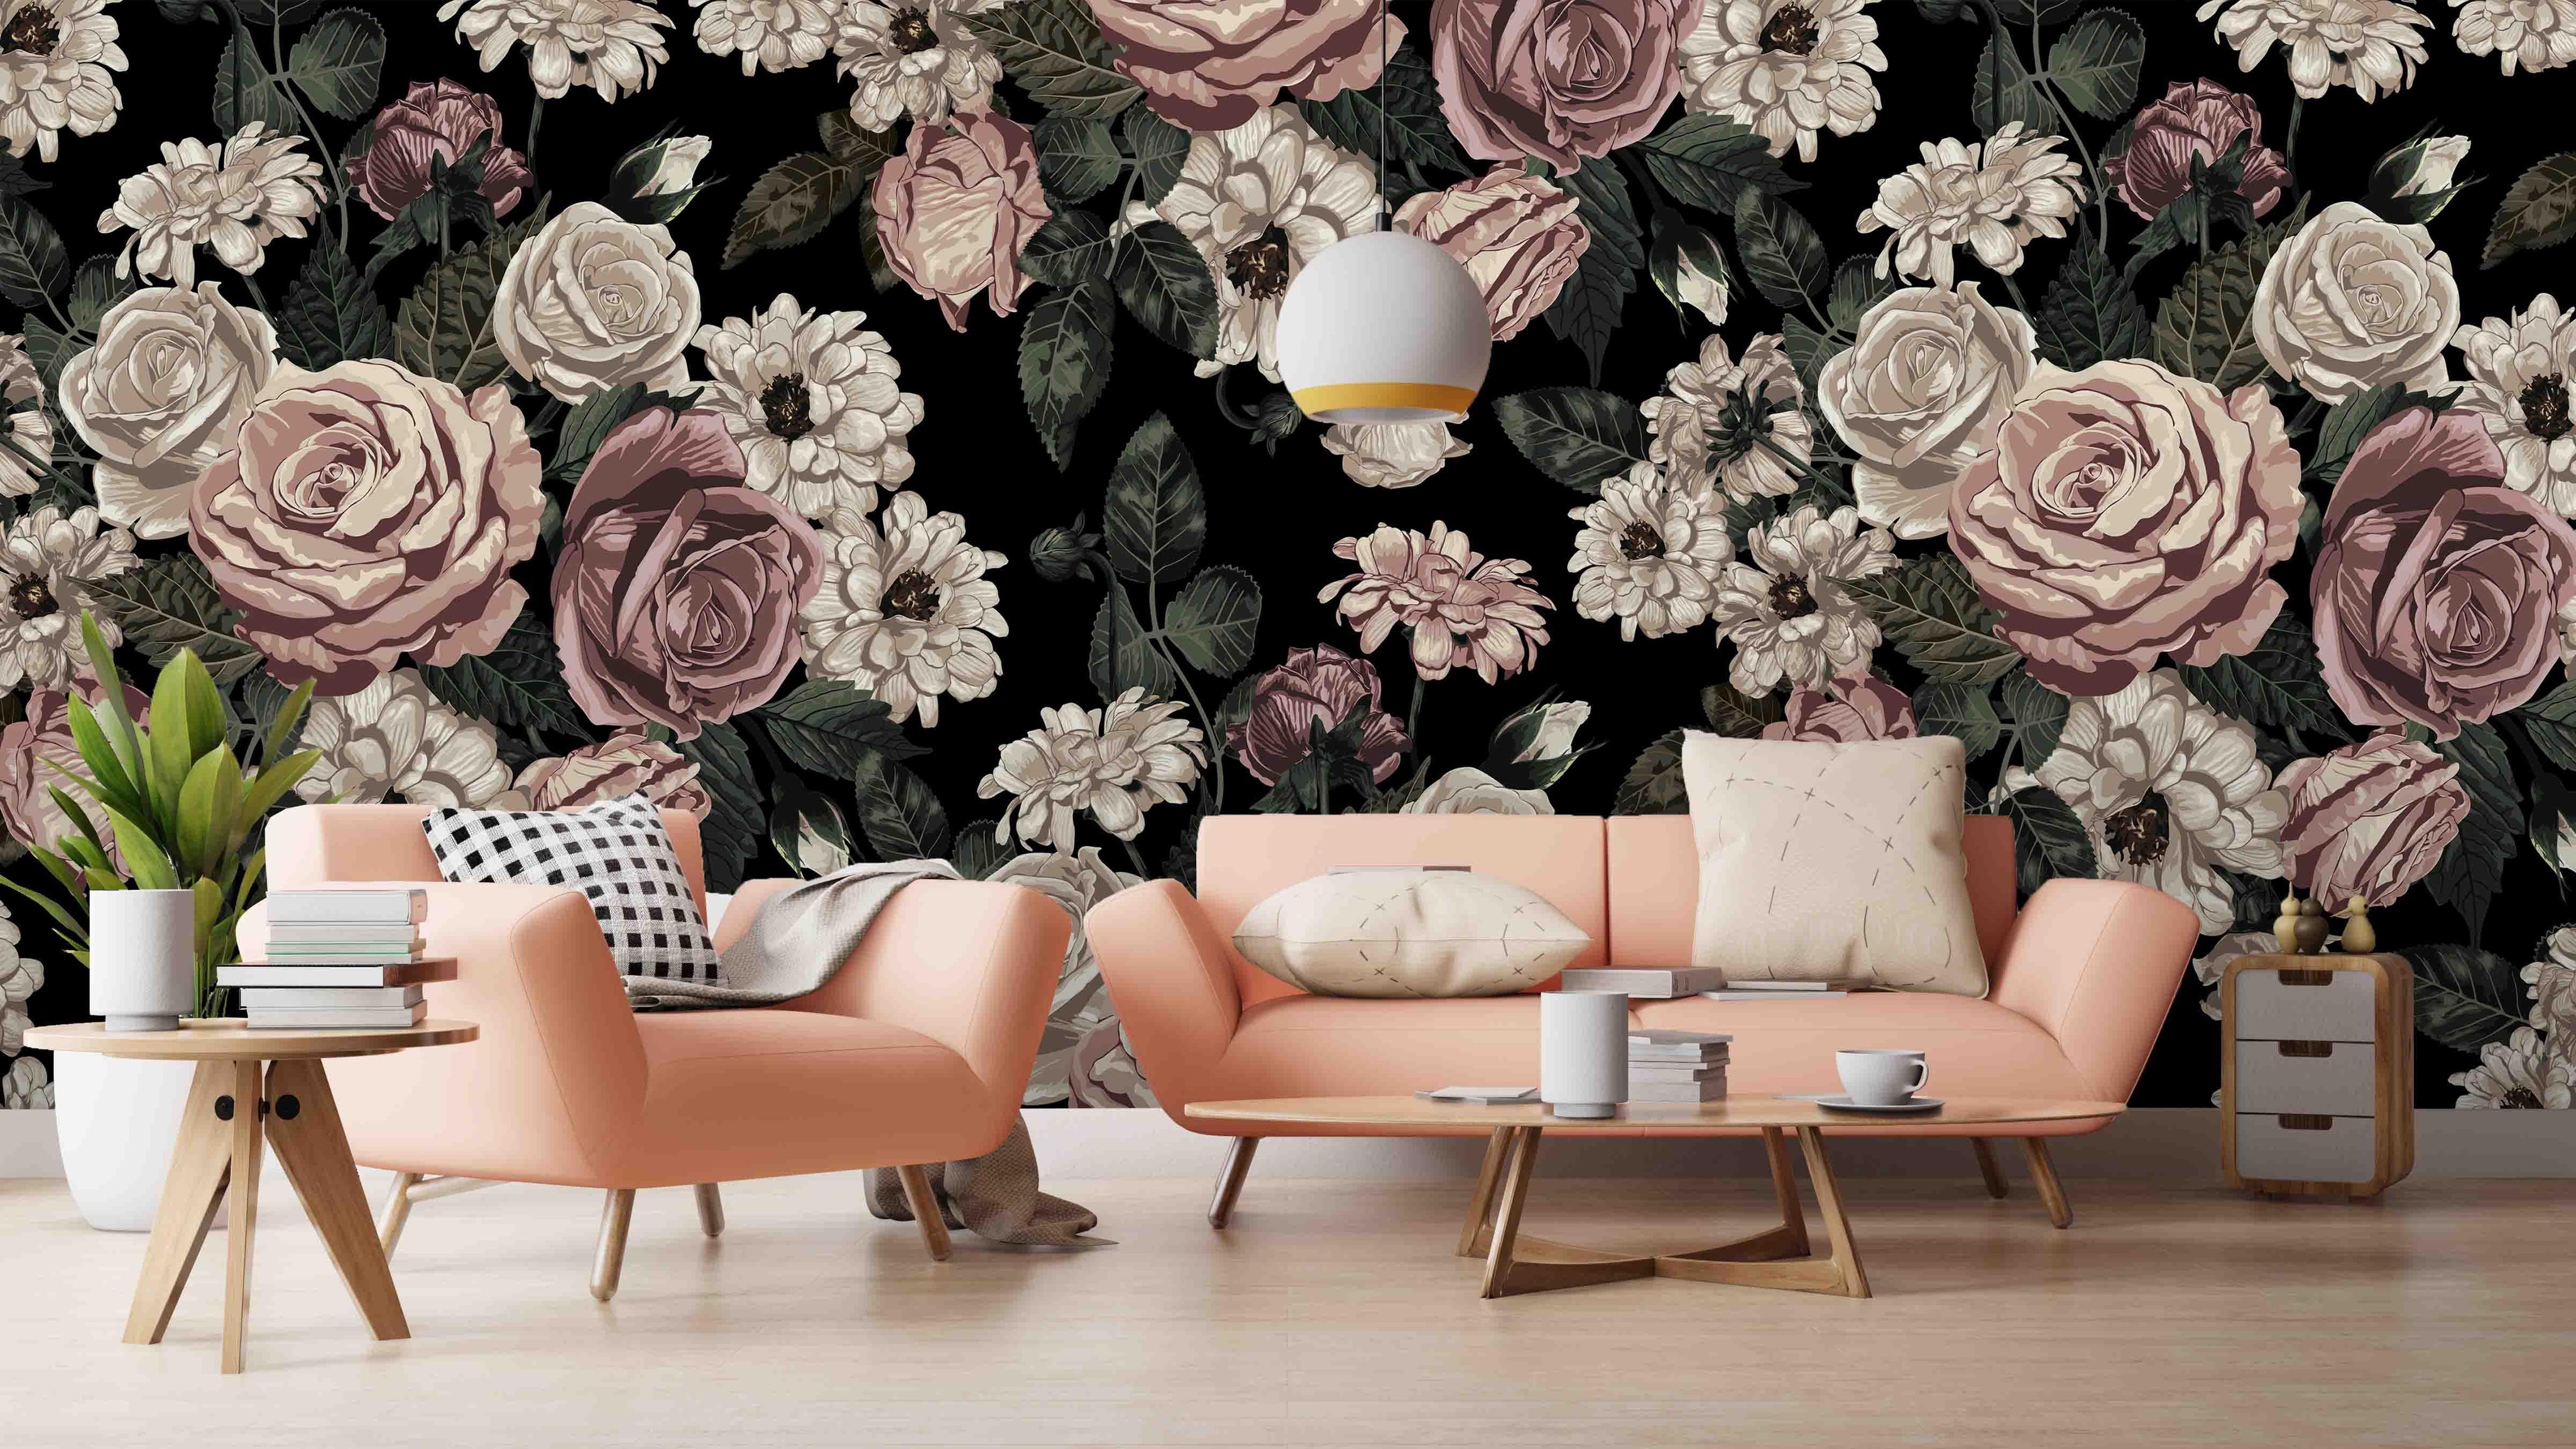 3D pink flowers wall mural wallpaper 11- Jess Art Decoration